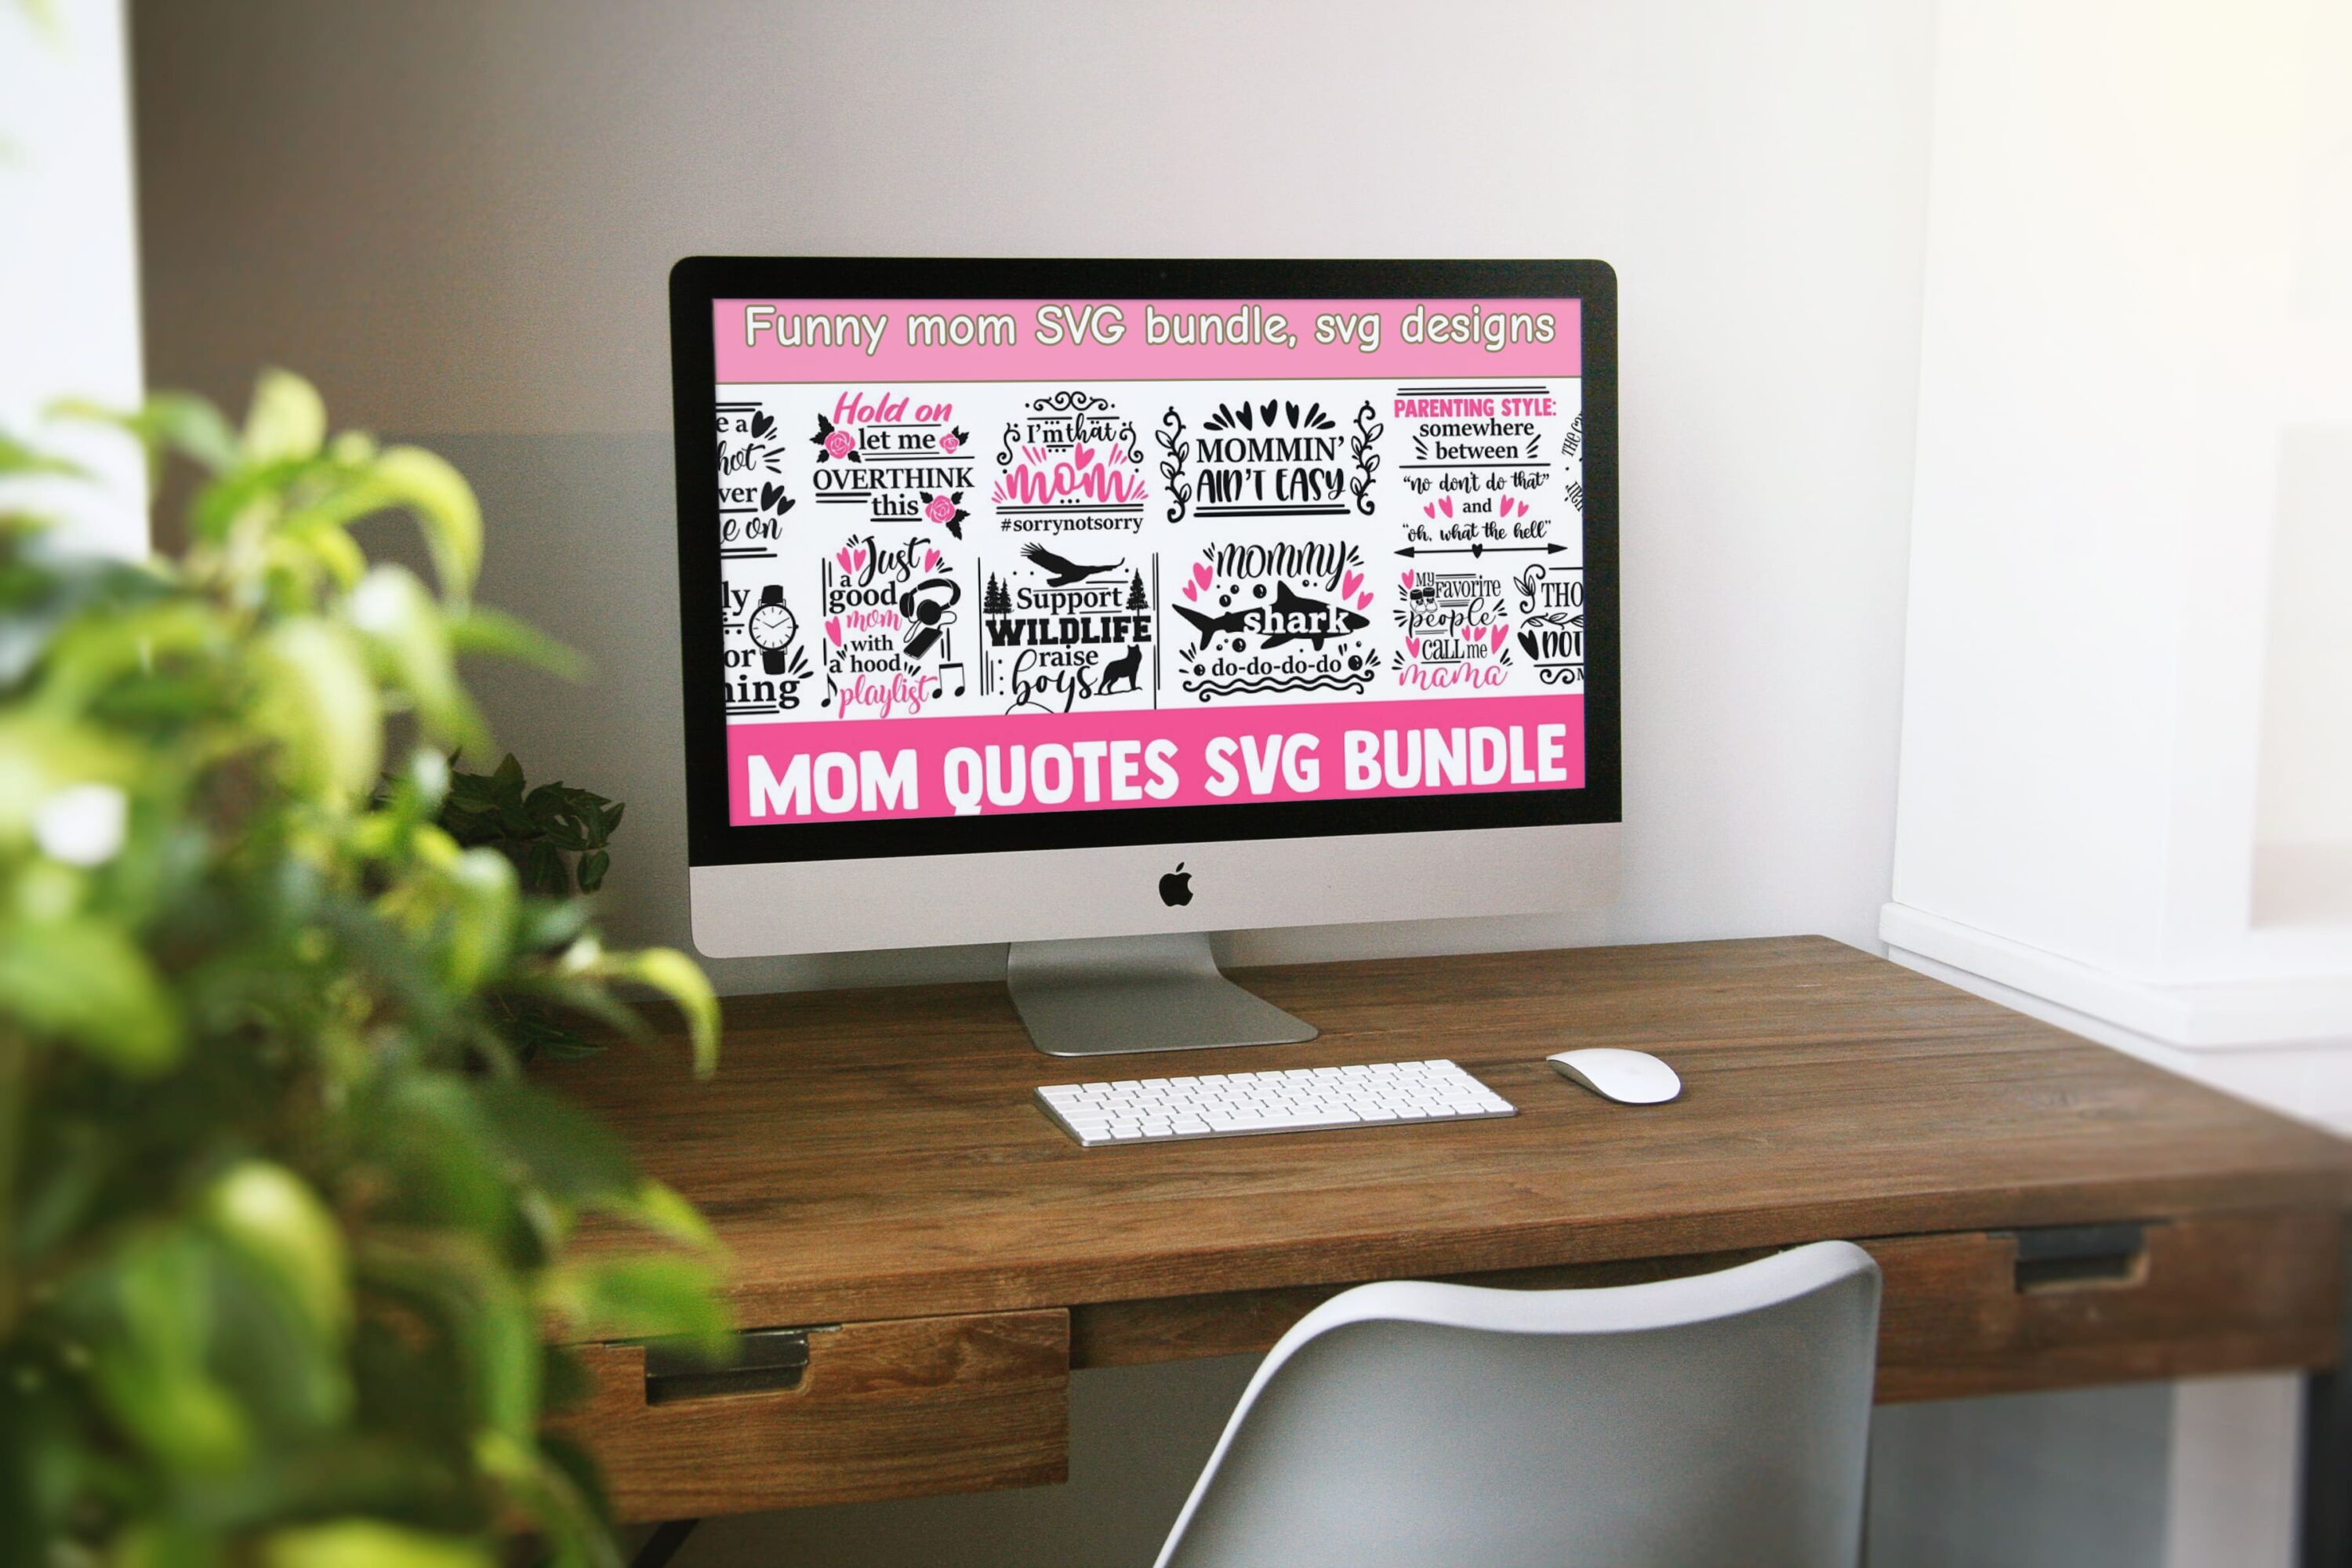 Funny mom SVG bundle, svg designs - desktop.